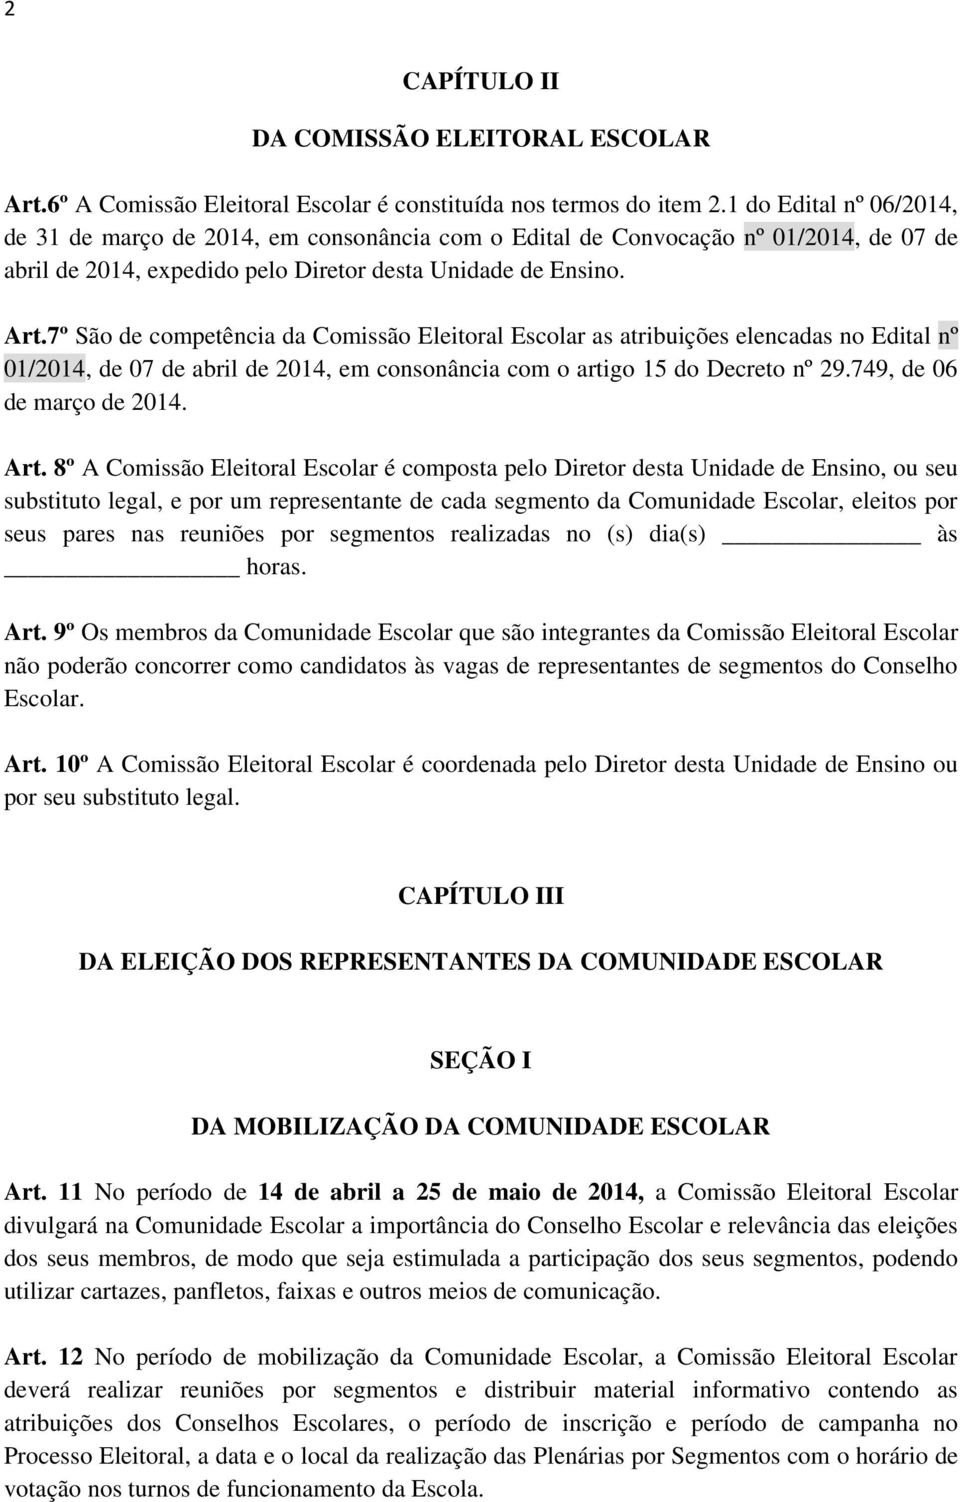 7º São de competência da Comissão Eleitoral Escolar as atribuições elencadas no Edital nº 01/2014, de 07 de abril de 2014, em consonância com o artigo 15 do Decreto nº 29.749, de 06 de março de 2014.